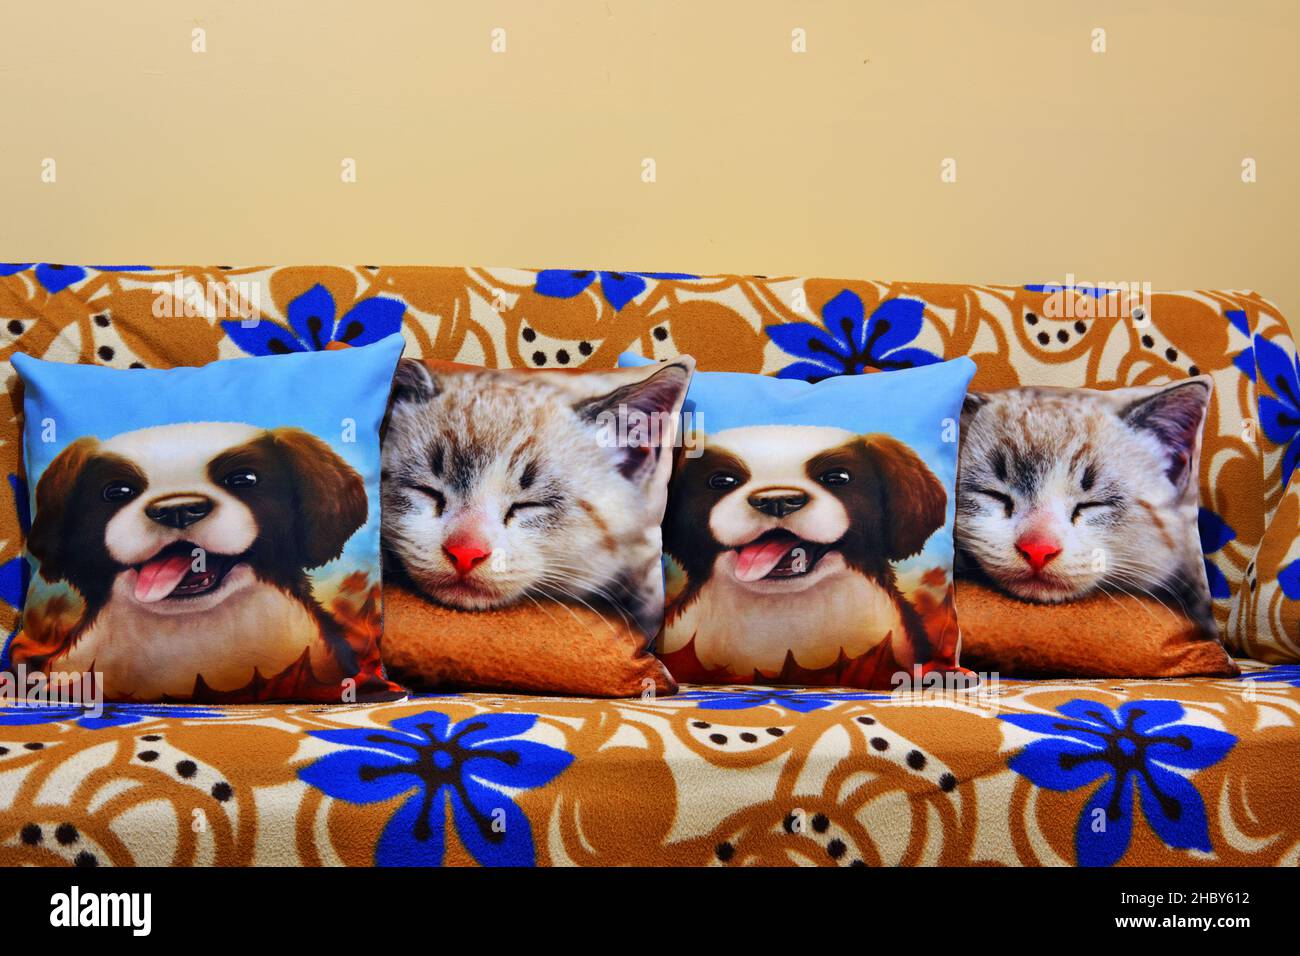 Kissen mit Hund und Katze Zeichnungen auf aufgeräumt Couch im Wohnzimmer Stockfoto